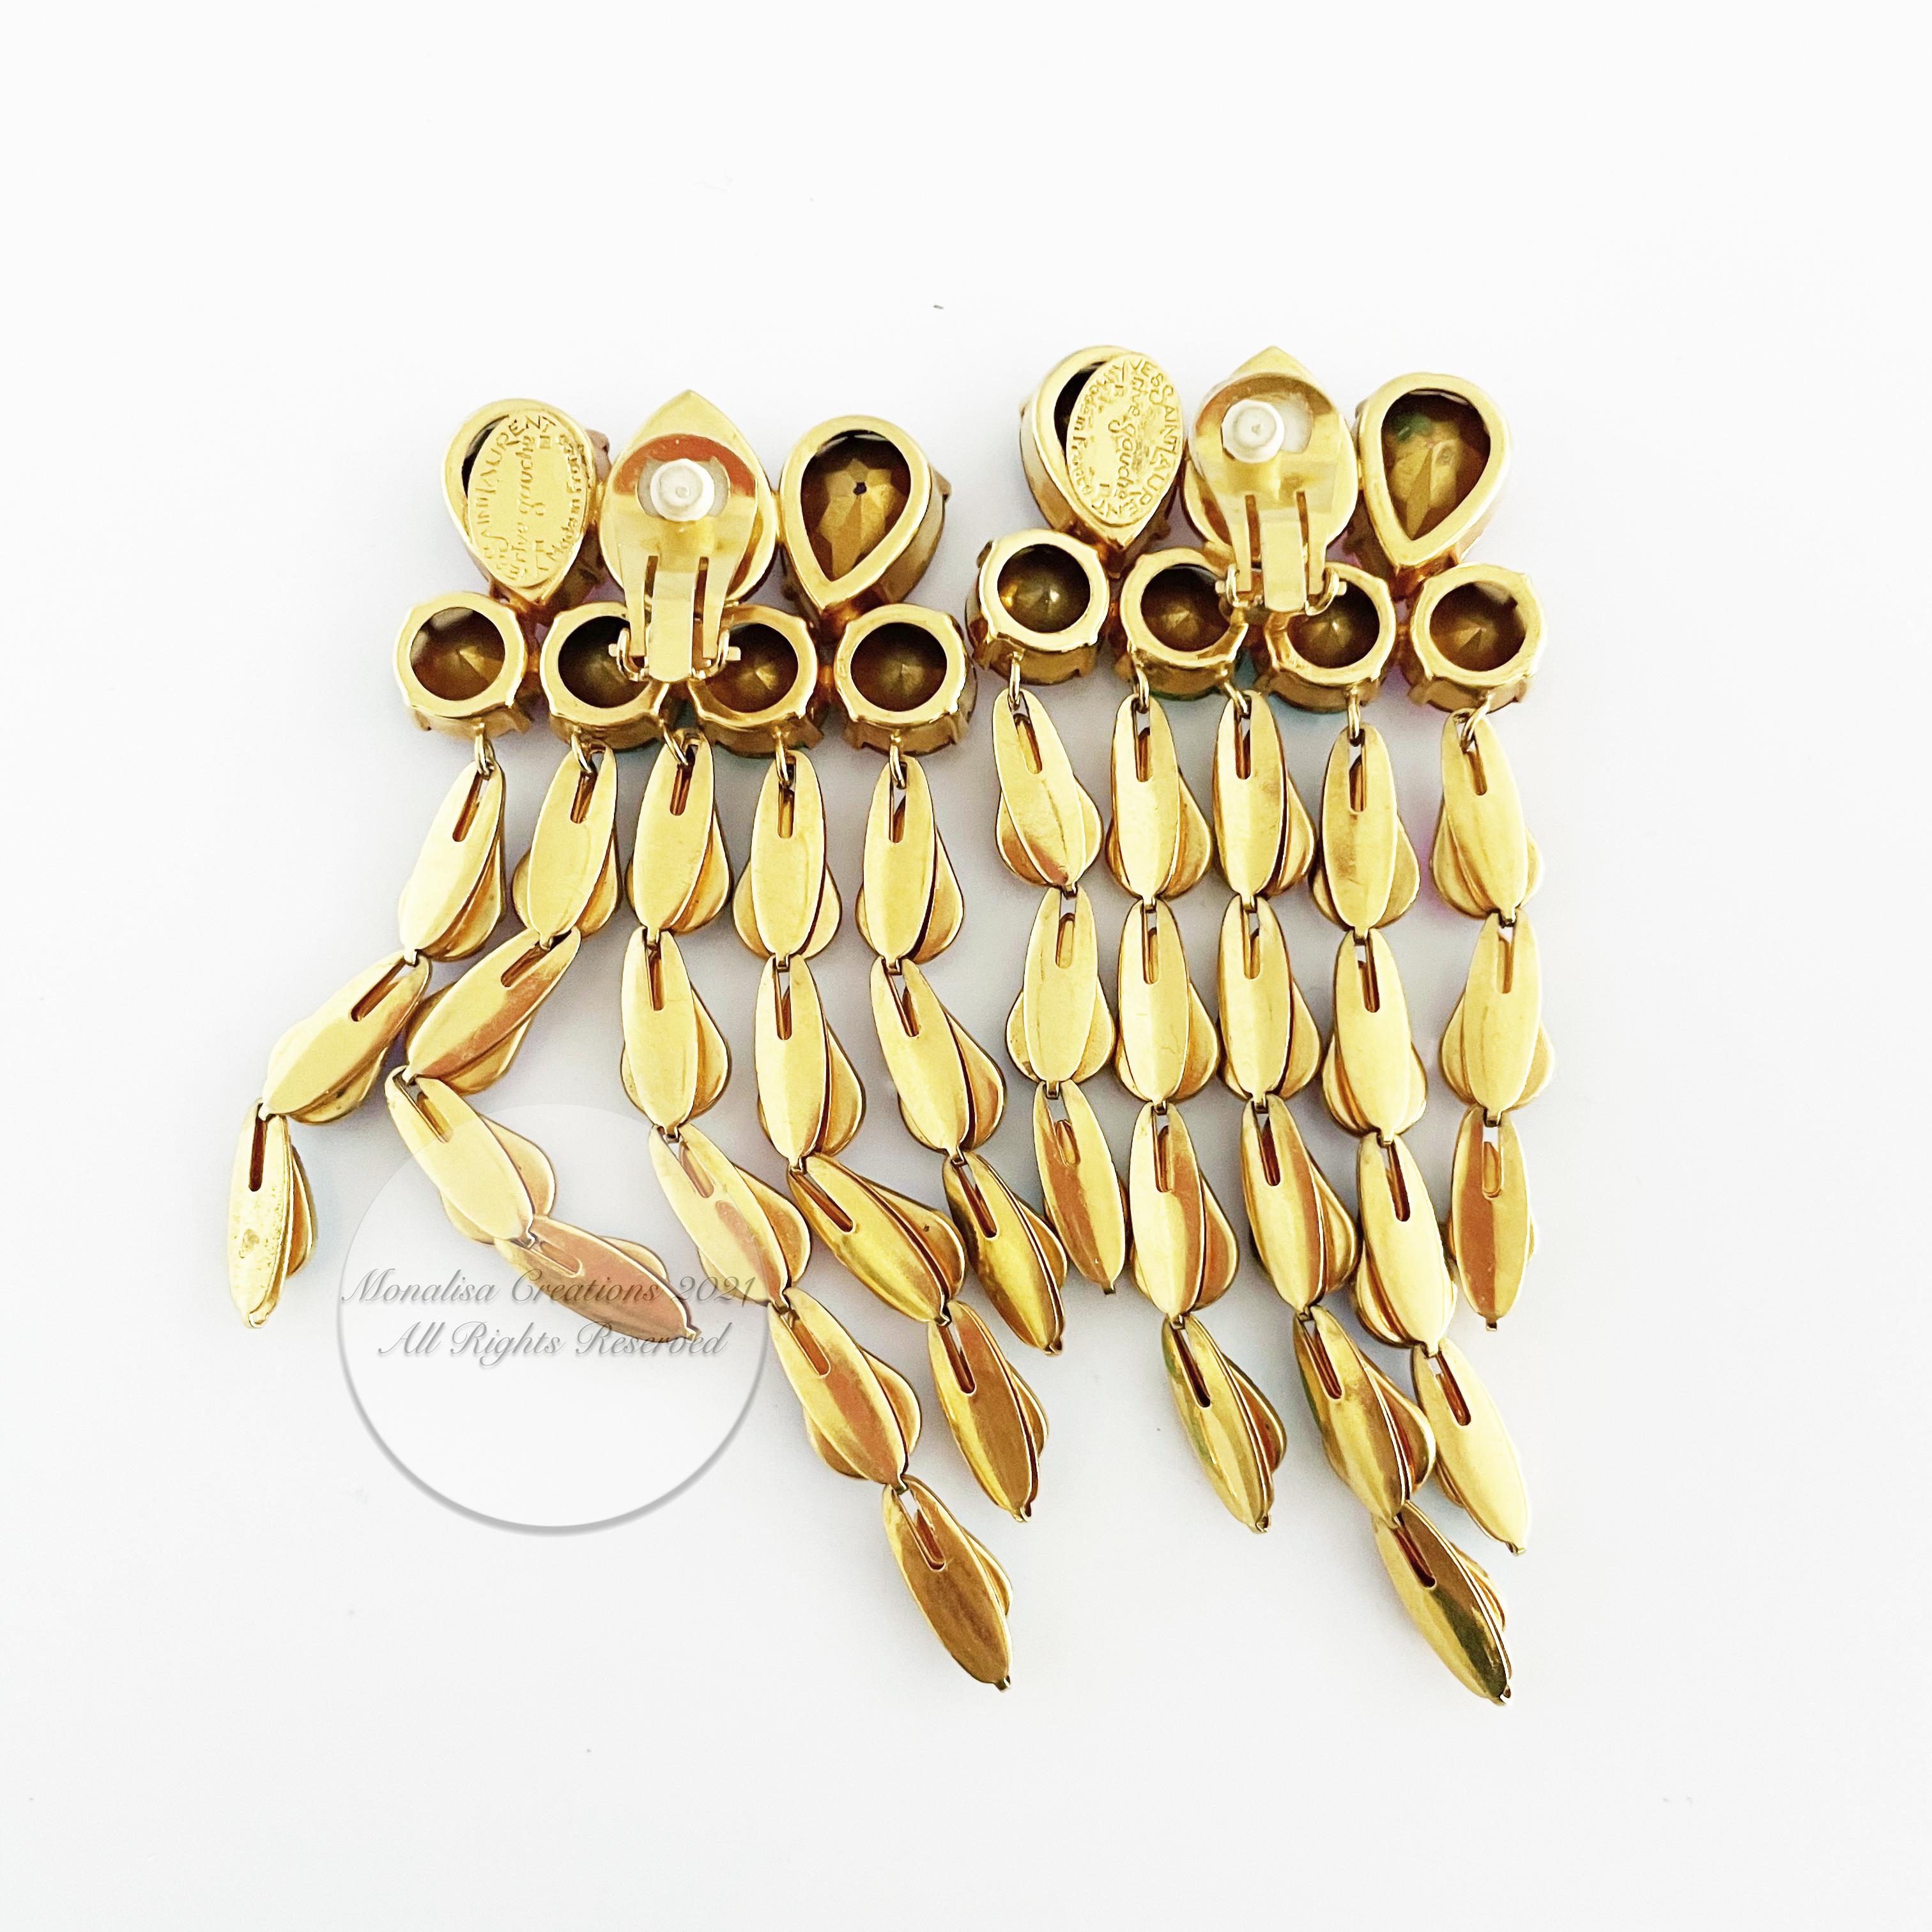 Yves Saint Laurent Statement Earrings Massive Chandelier Dangles Vintage Rare 5